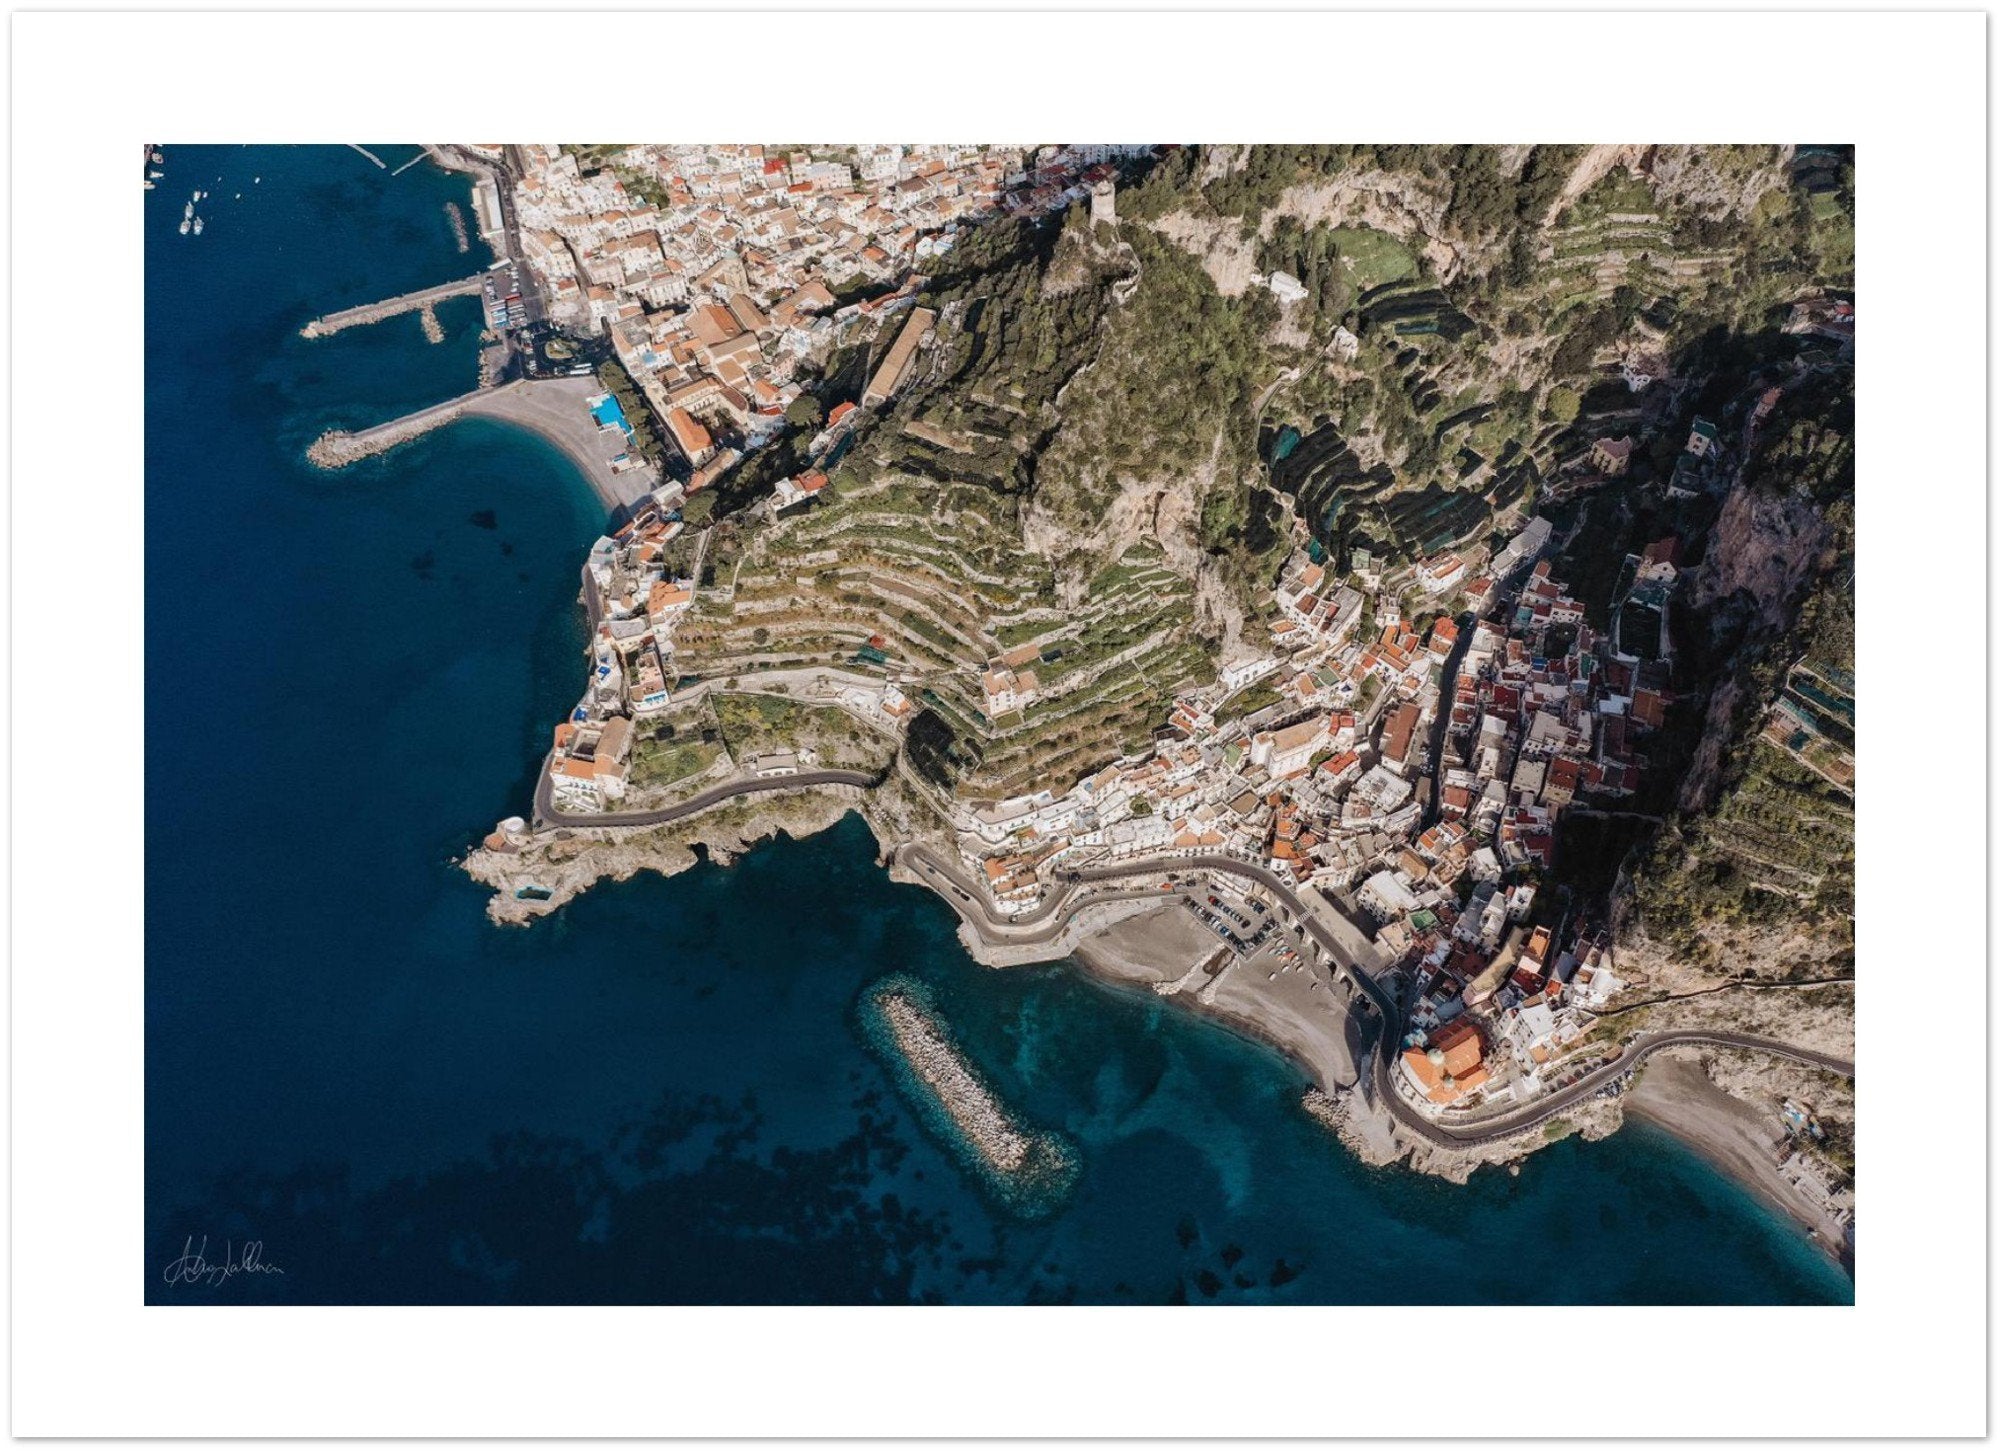 Atrani Aerial View Premium Semi-Glossy Print